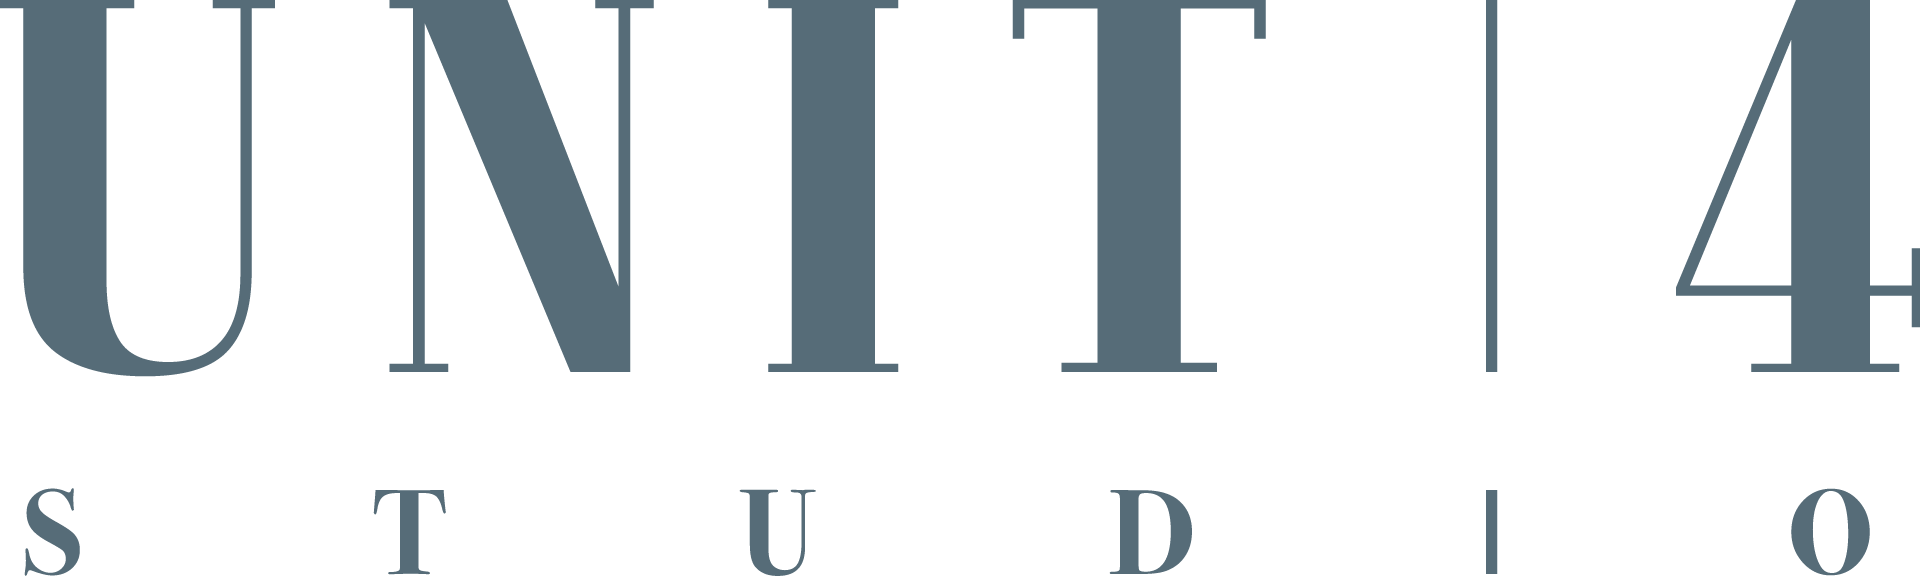 Unit4 Unit 4 Website Web Design Designer East London Essex Interior Design Branding Logo